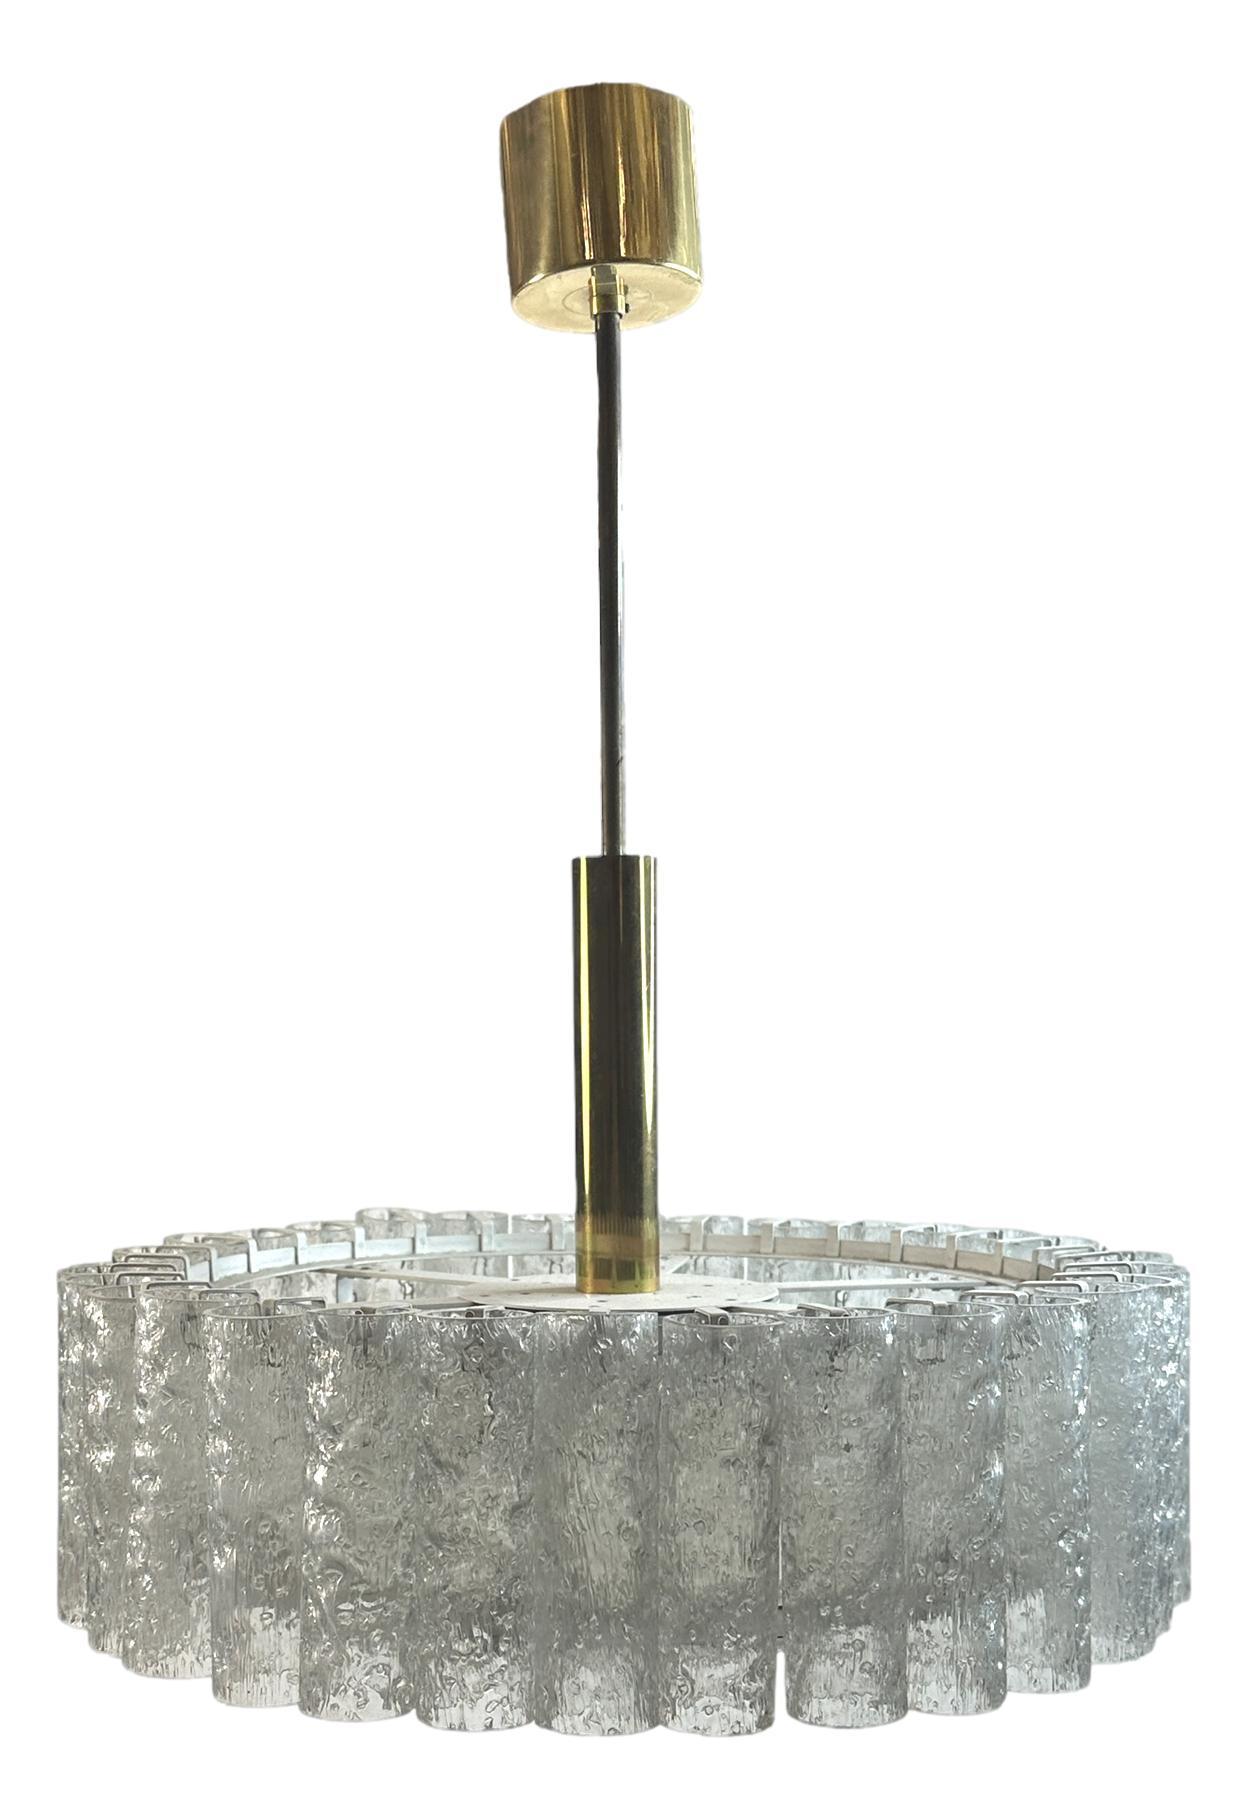 Magnifique lampe suspendue en tube de verre fabriquée par Doria Leuchten, Allemagne. Il est en très bon état et nécessite six ampoules candélabres européennes E14 / 110 volts, chaque ampoule pouvant atteindre 40 watts. Trouvé dans une vente de